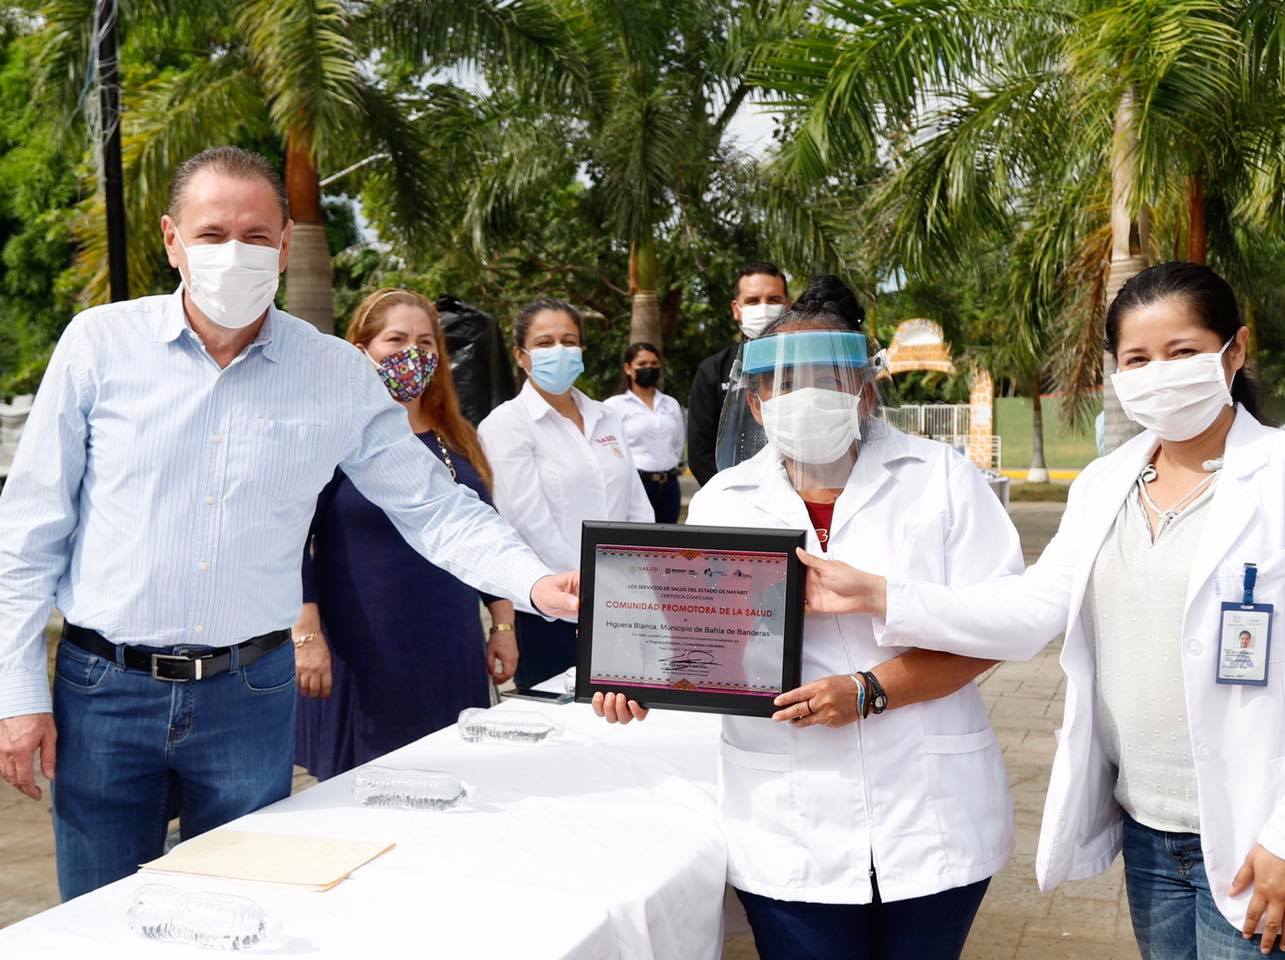 HIGUERA BLANCA SALUDABLE 1 Recibe Higuera Blanca certificación como "Comunidad Promotora de la Salud"